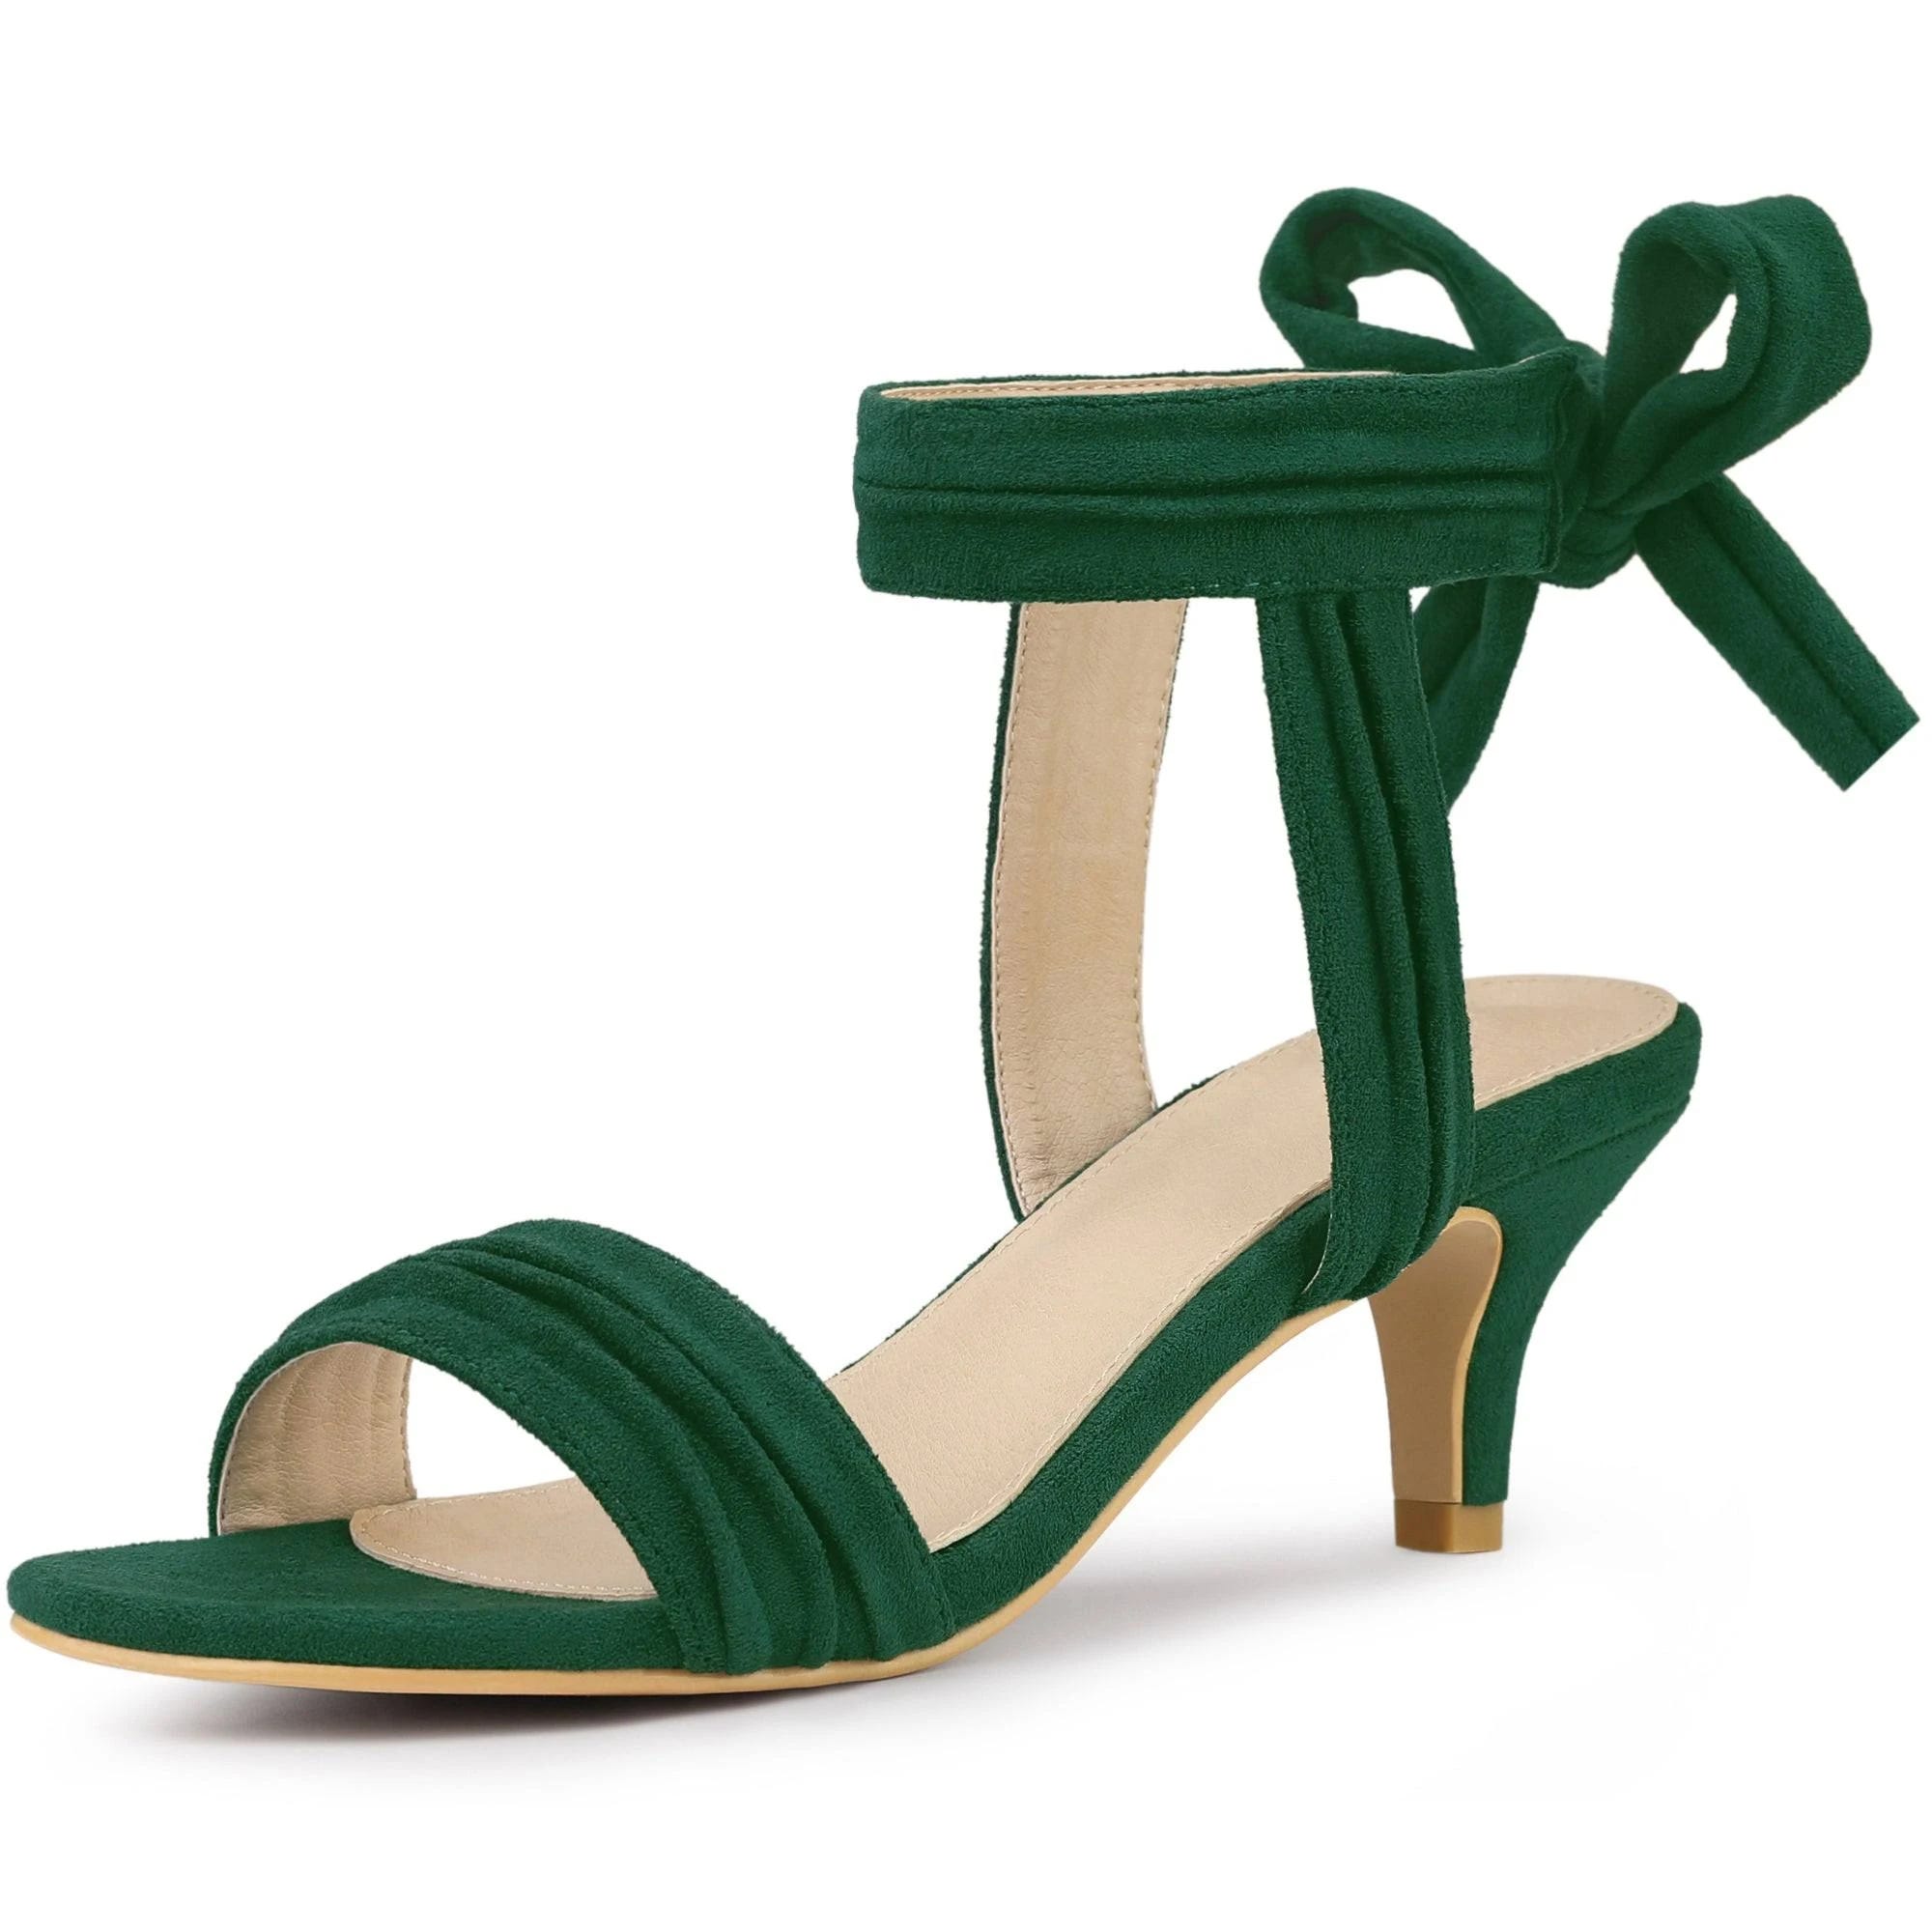 Sensational Green Bow Tie Mid Heel Sandals | Image